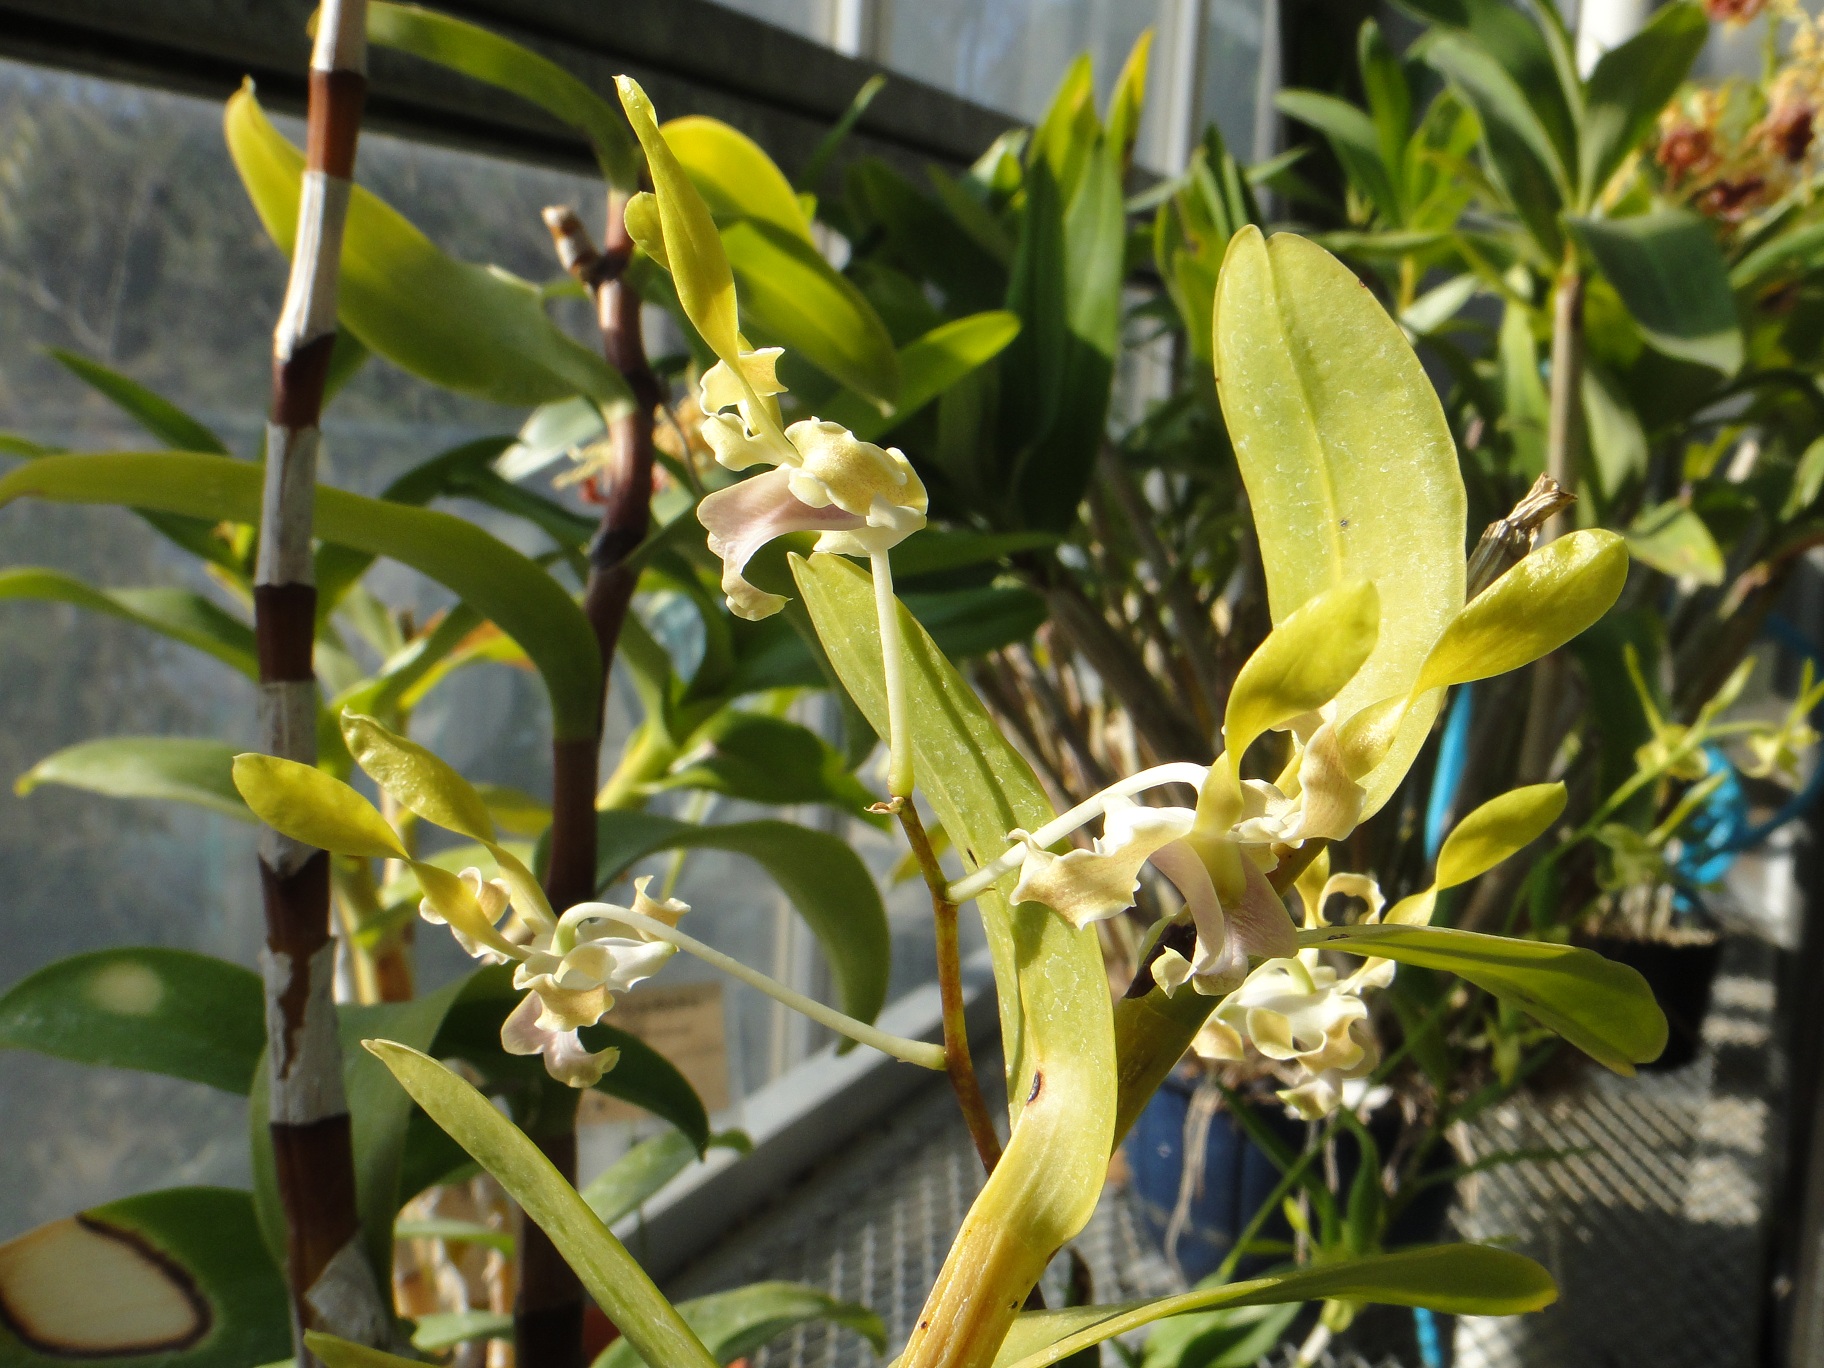 http://orchids.la.coocan.jp/Dendrobium/Dendrobium%20helix/DSC09482.JPG